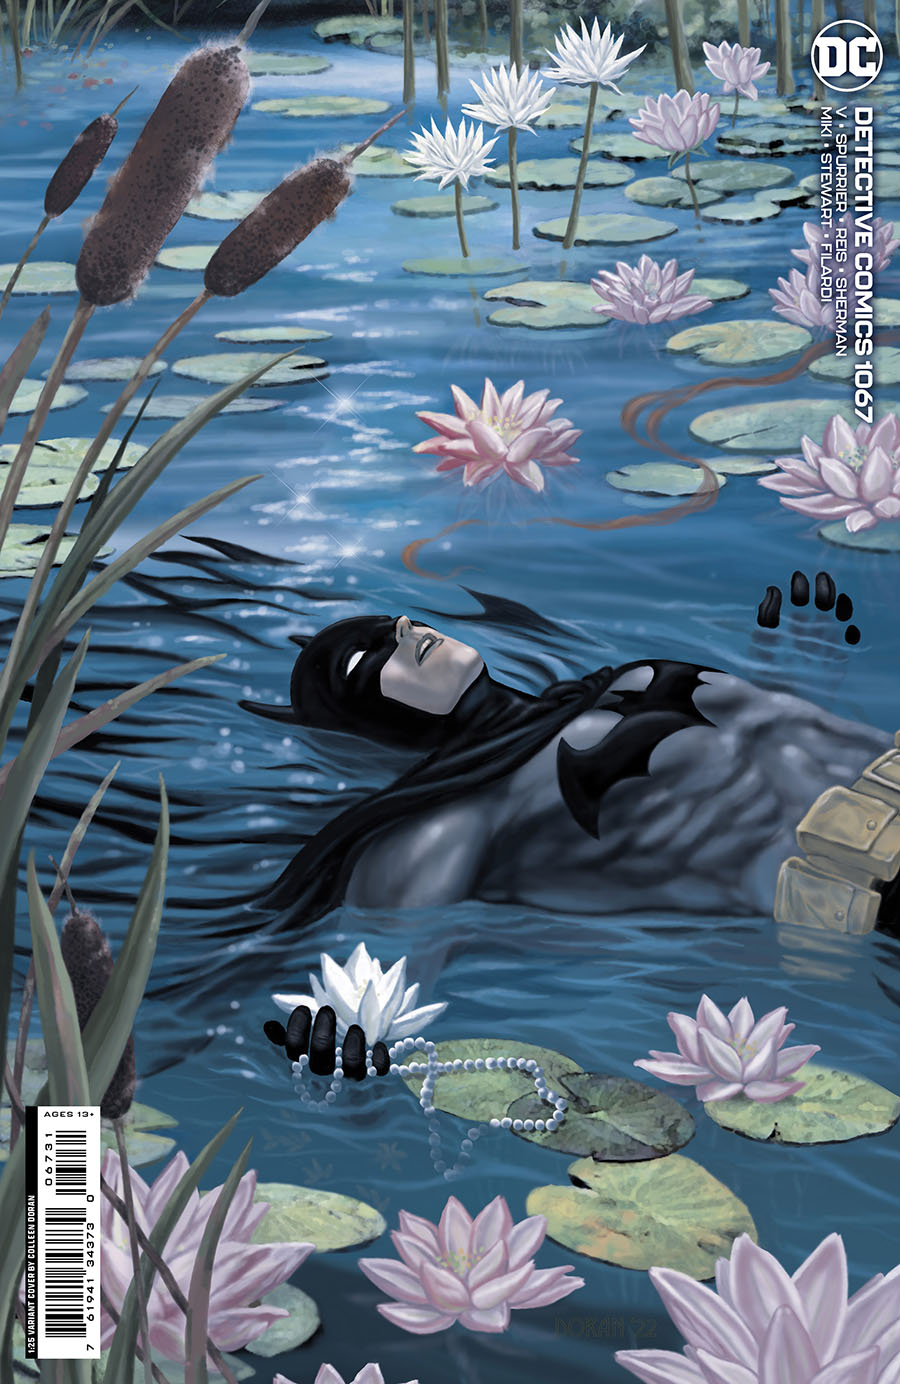 Detective Comics Vol 2 #1067 Cover D Incentive Colleen Doran Card Stock Variant Cover